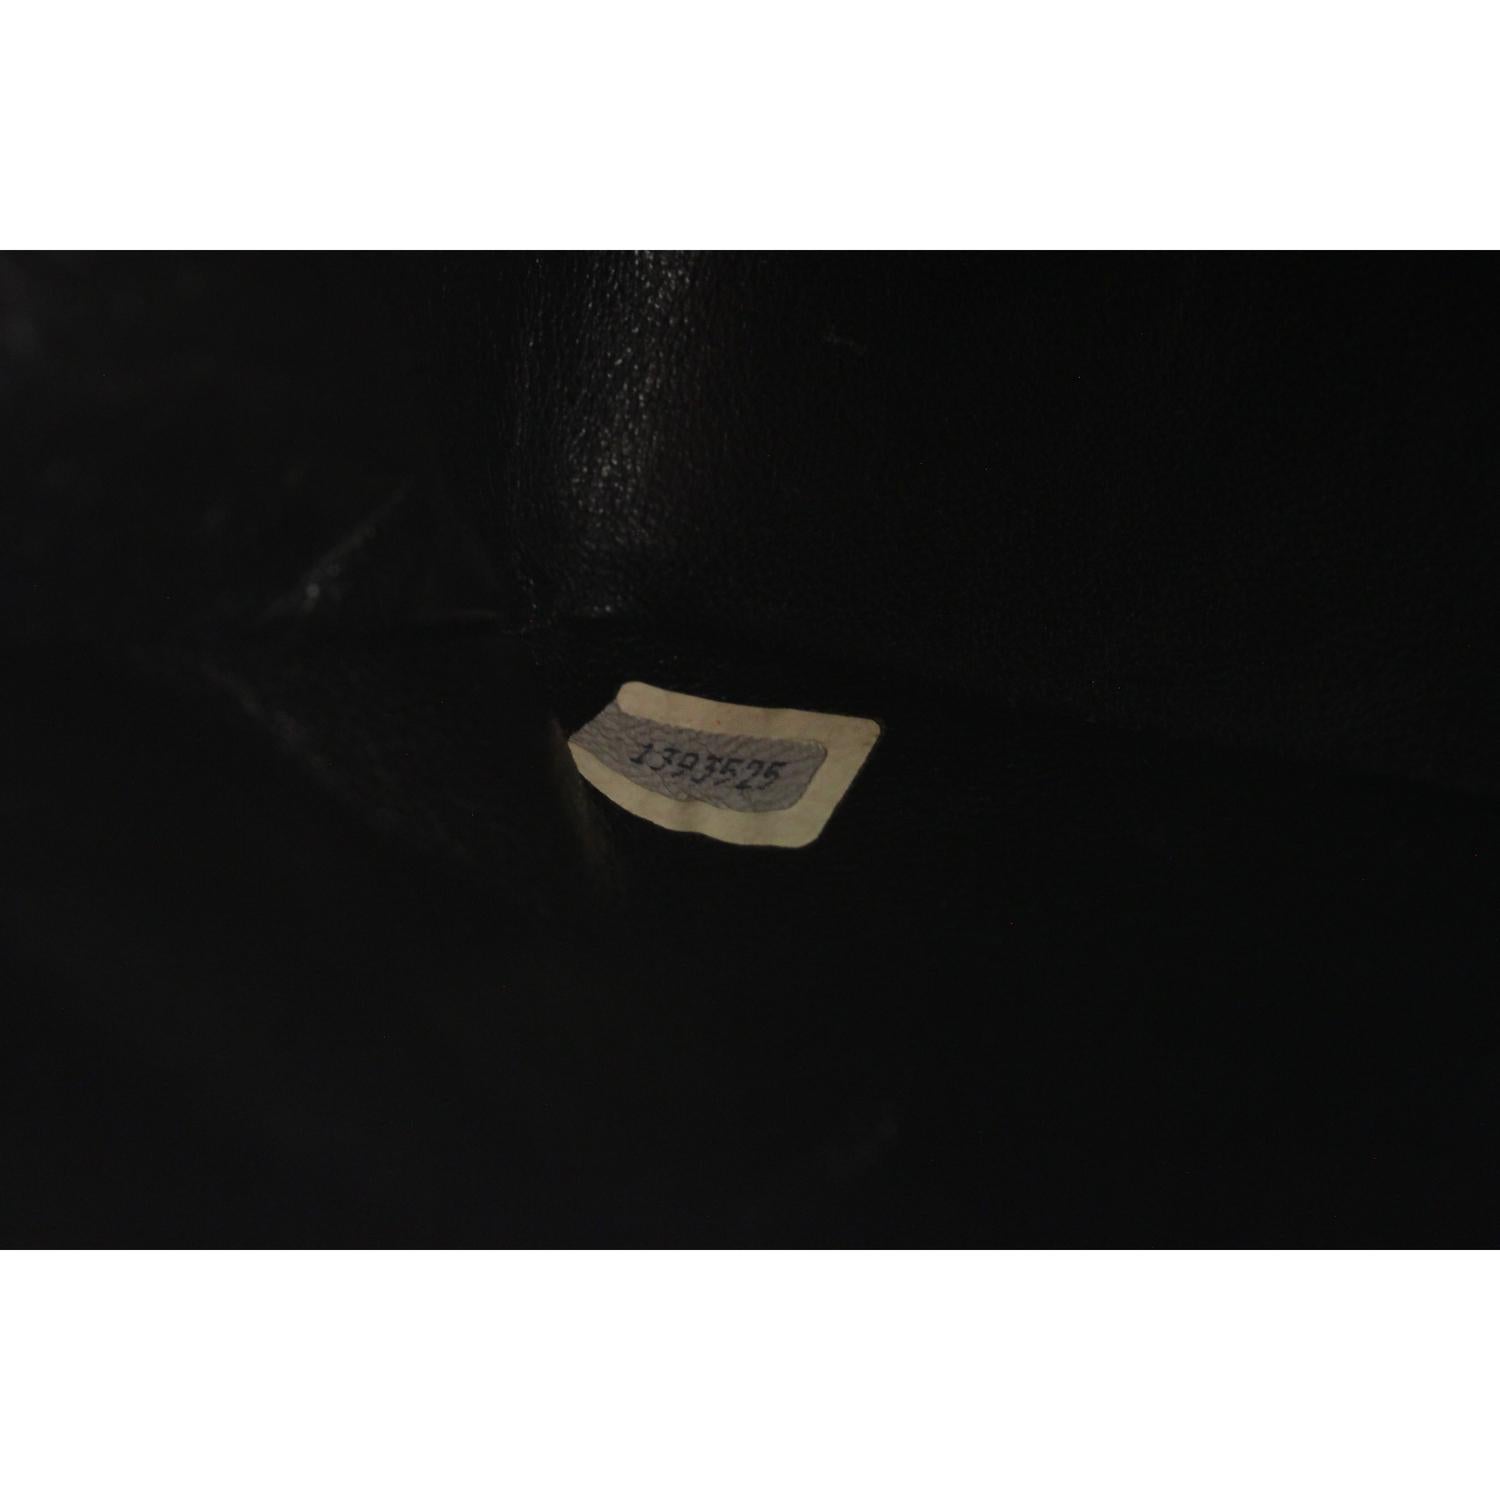 Chanel Vintage Black Quilted Leather Shoulder Bag with Contrast Trim 10